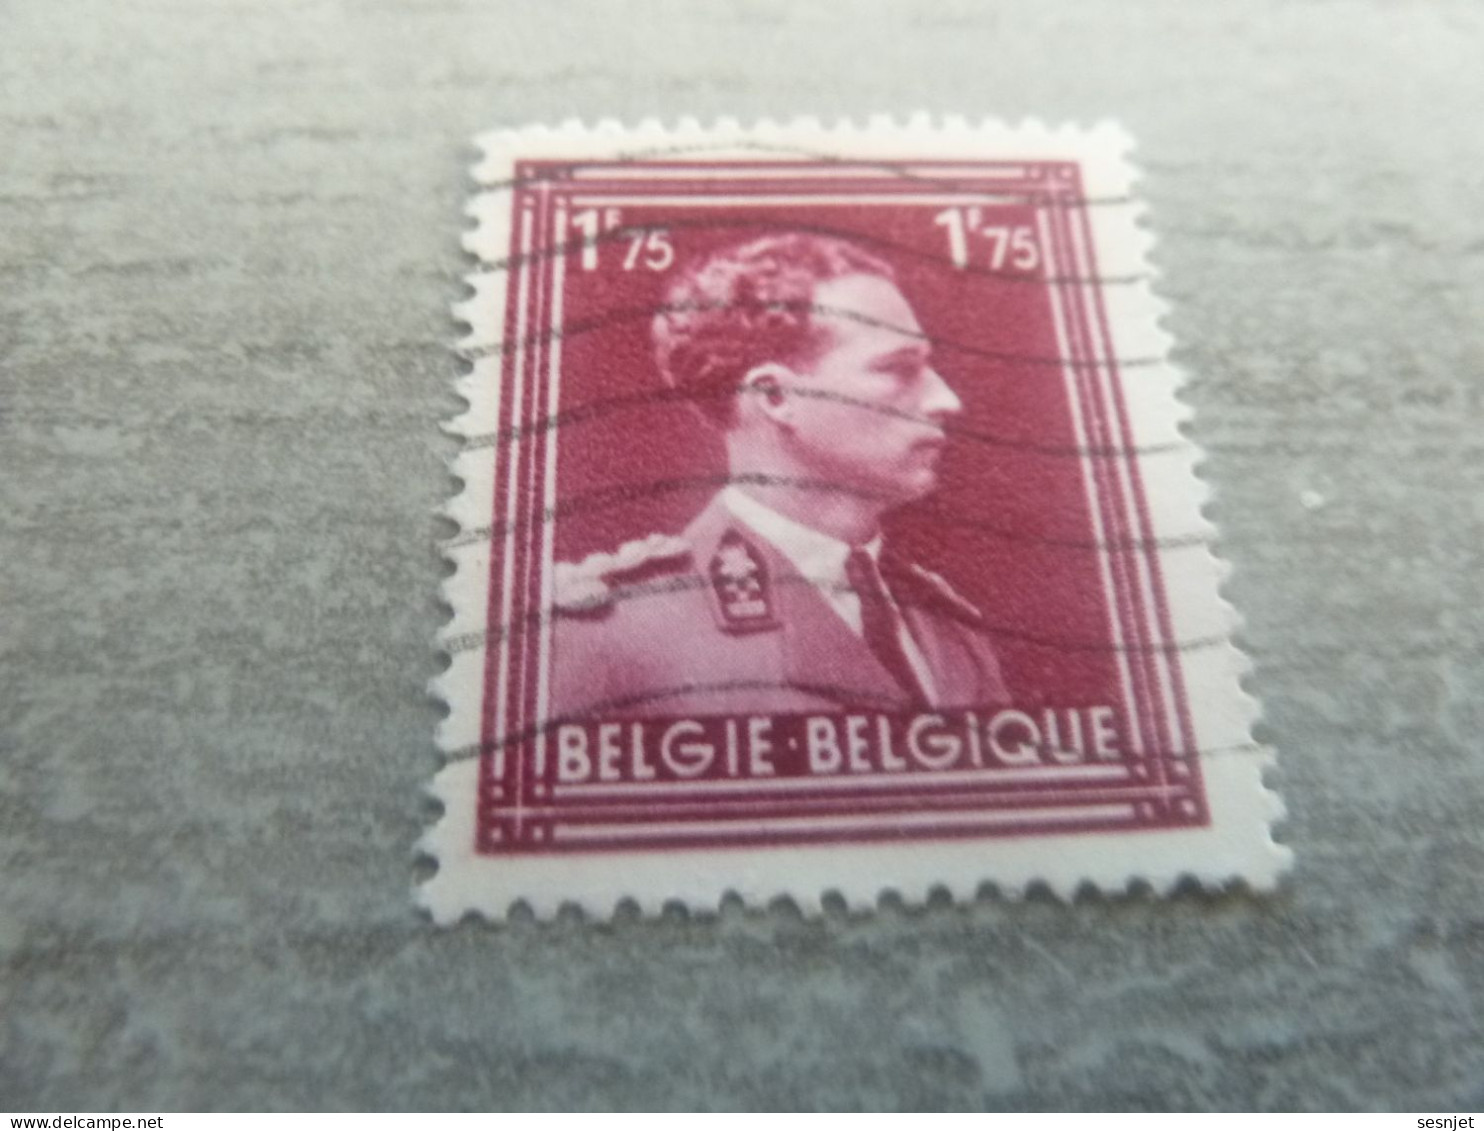 Belgique - Albert 1 - Val  1f.75 - Rose-Lilas - Oblitéré - Année 1945 - - Usati